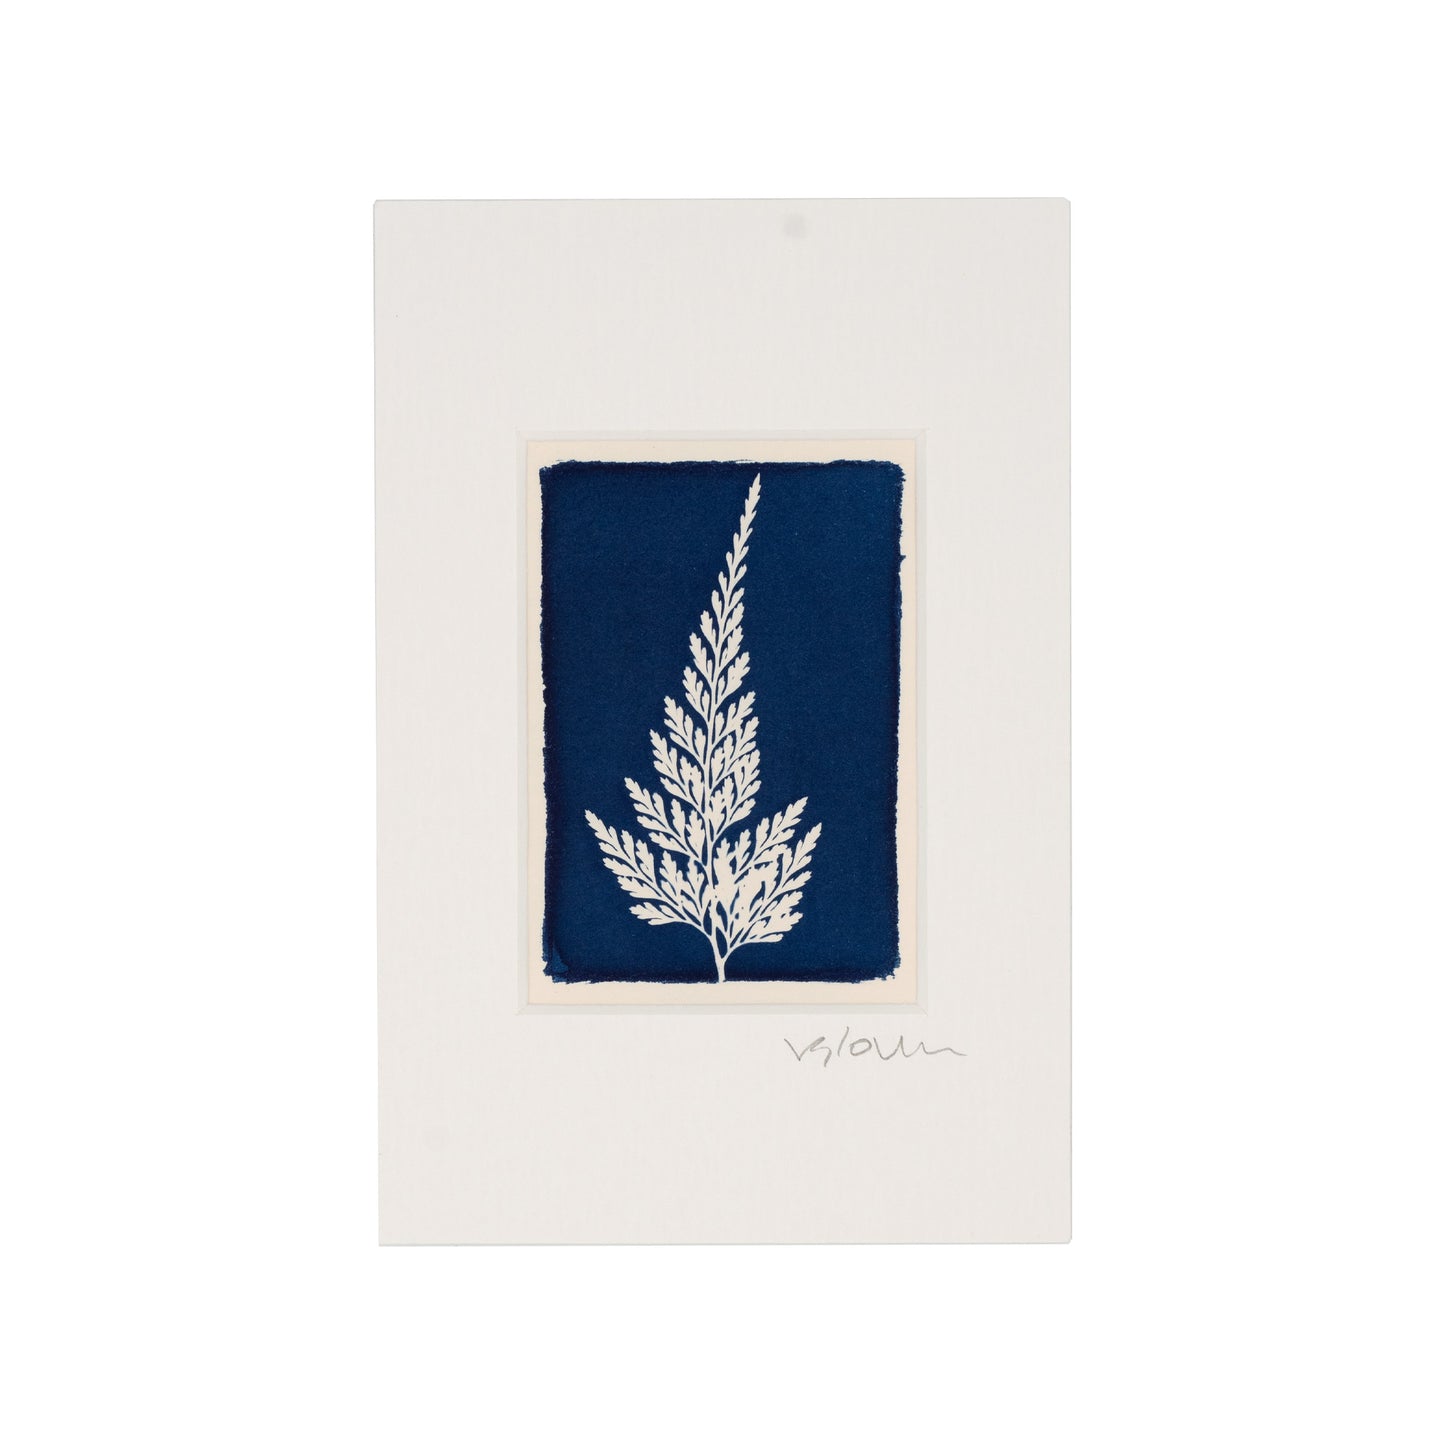 Cyanotype print of fern